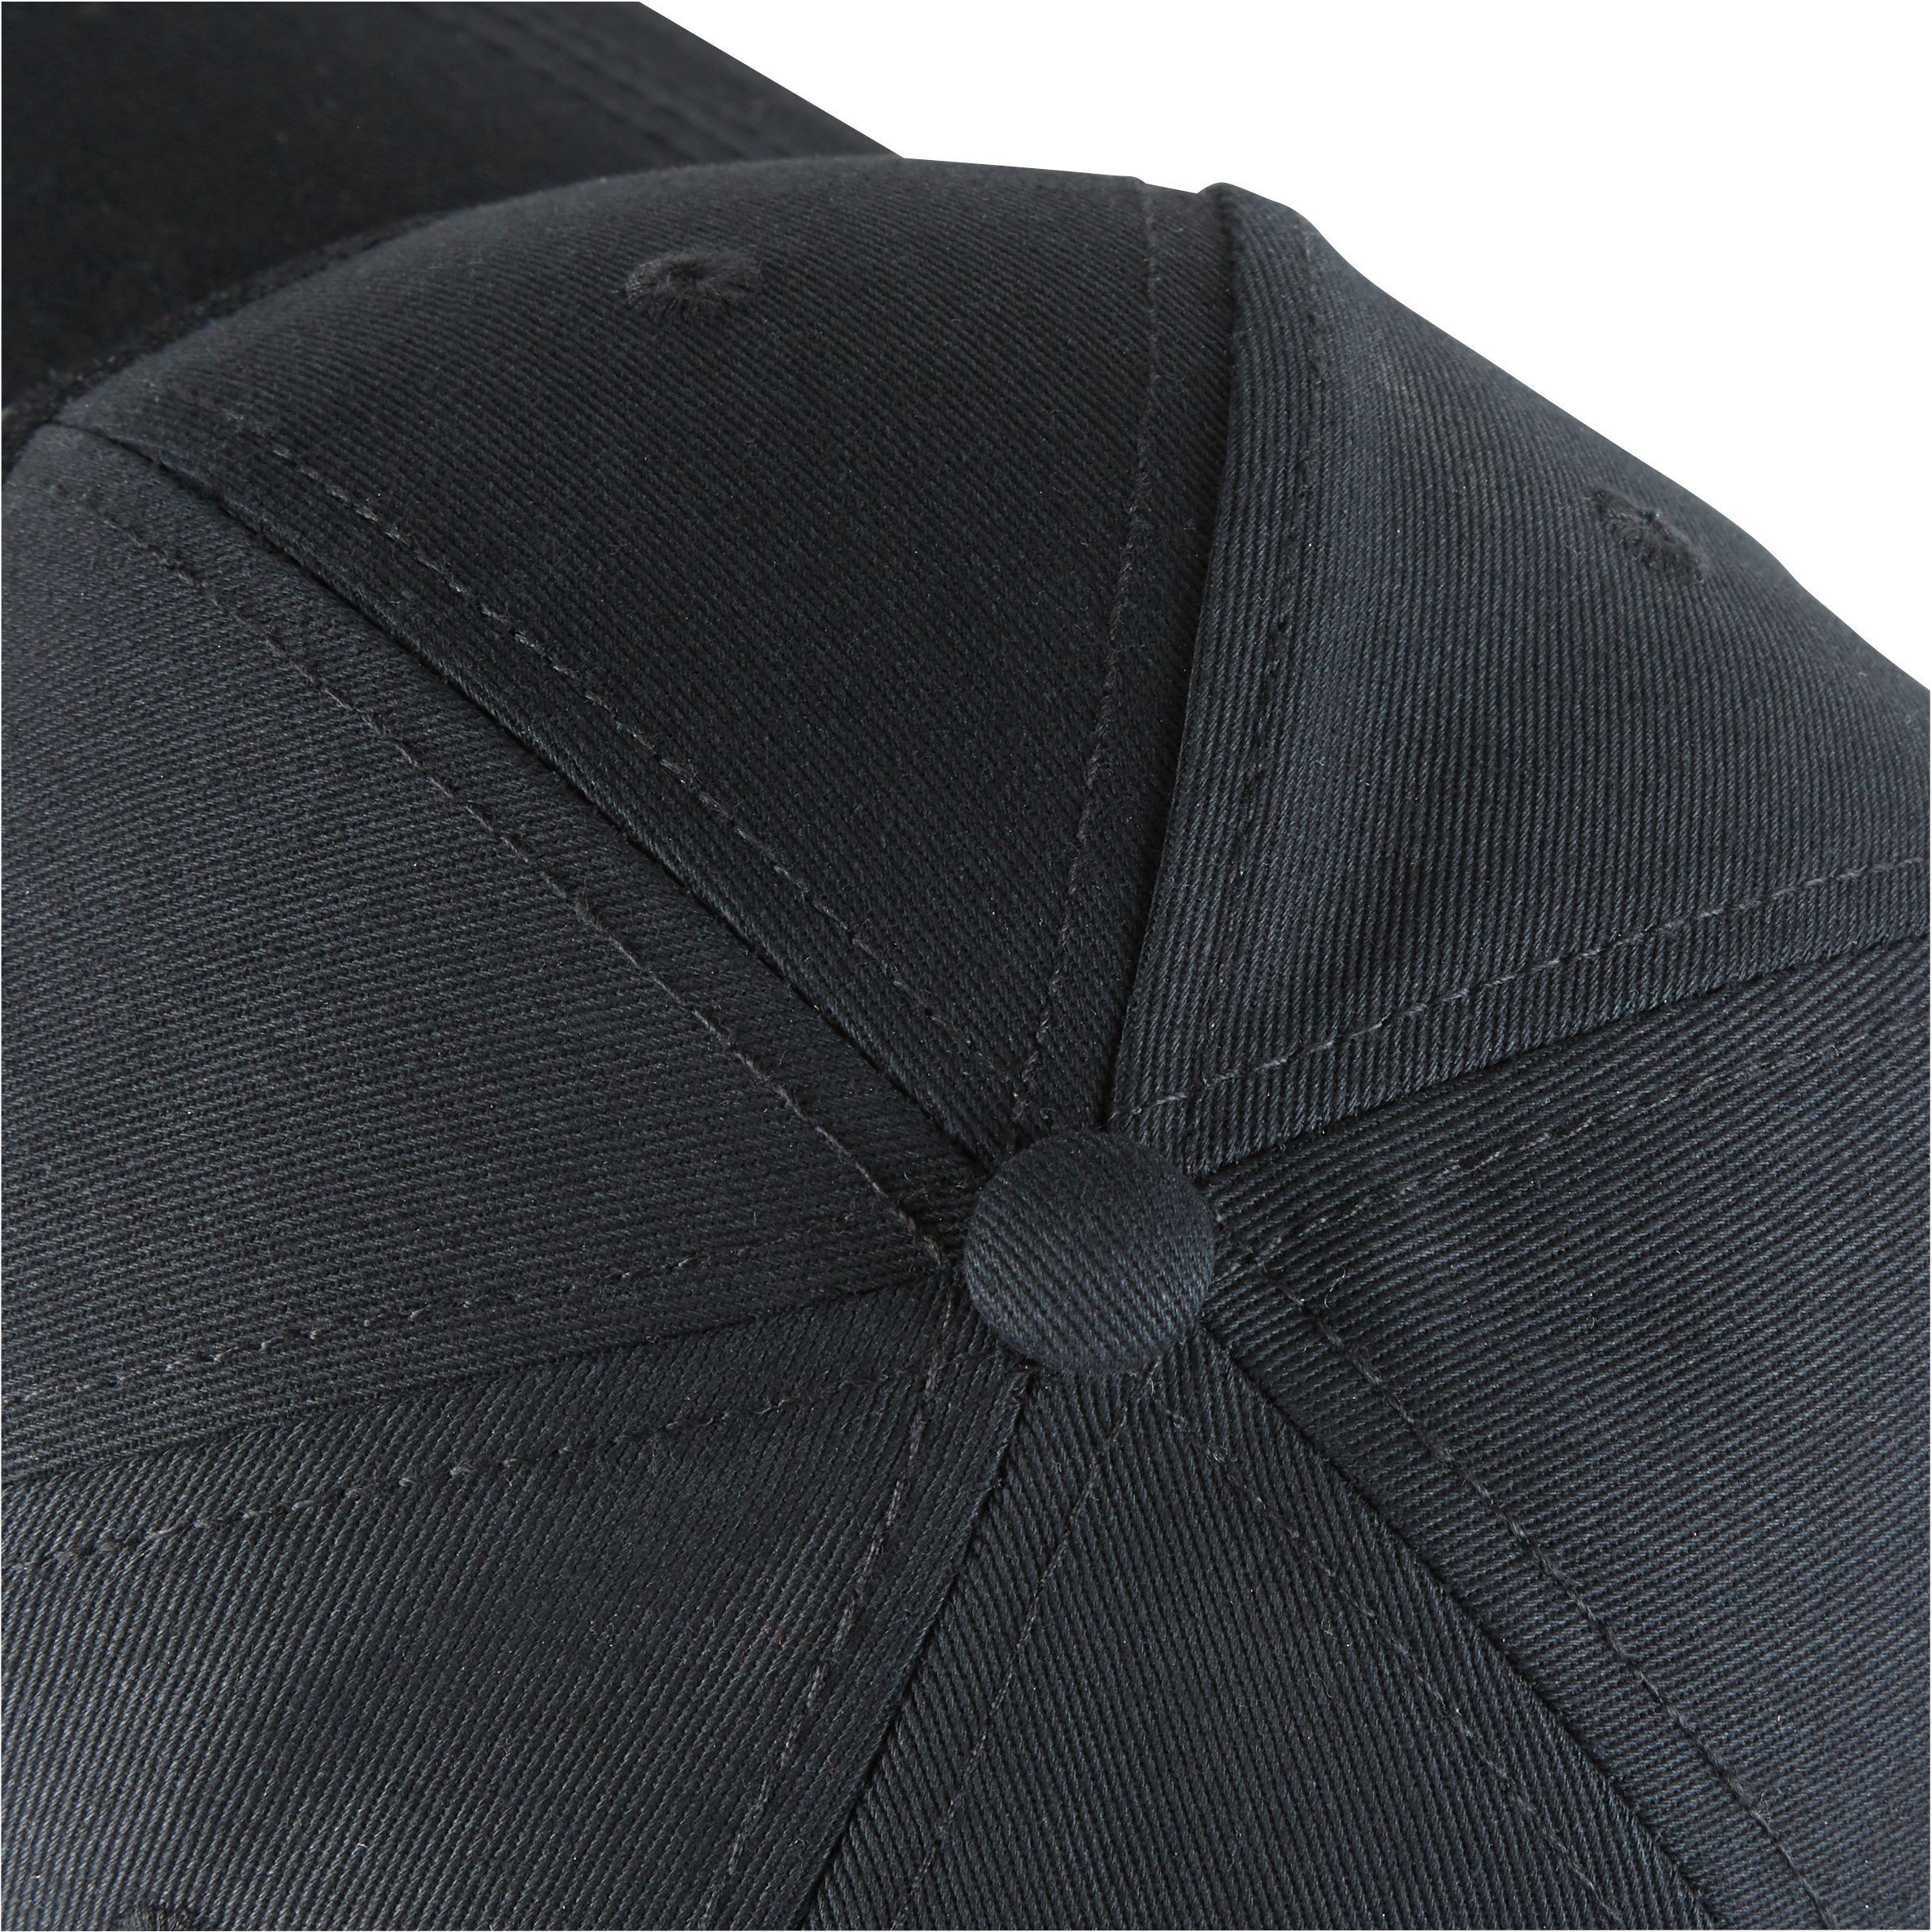 Northern Country Snapback Cap größenverstellbar, Black schützt beim Sonne Beauty vor Arbeiten